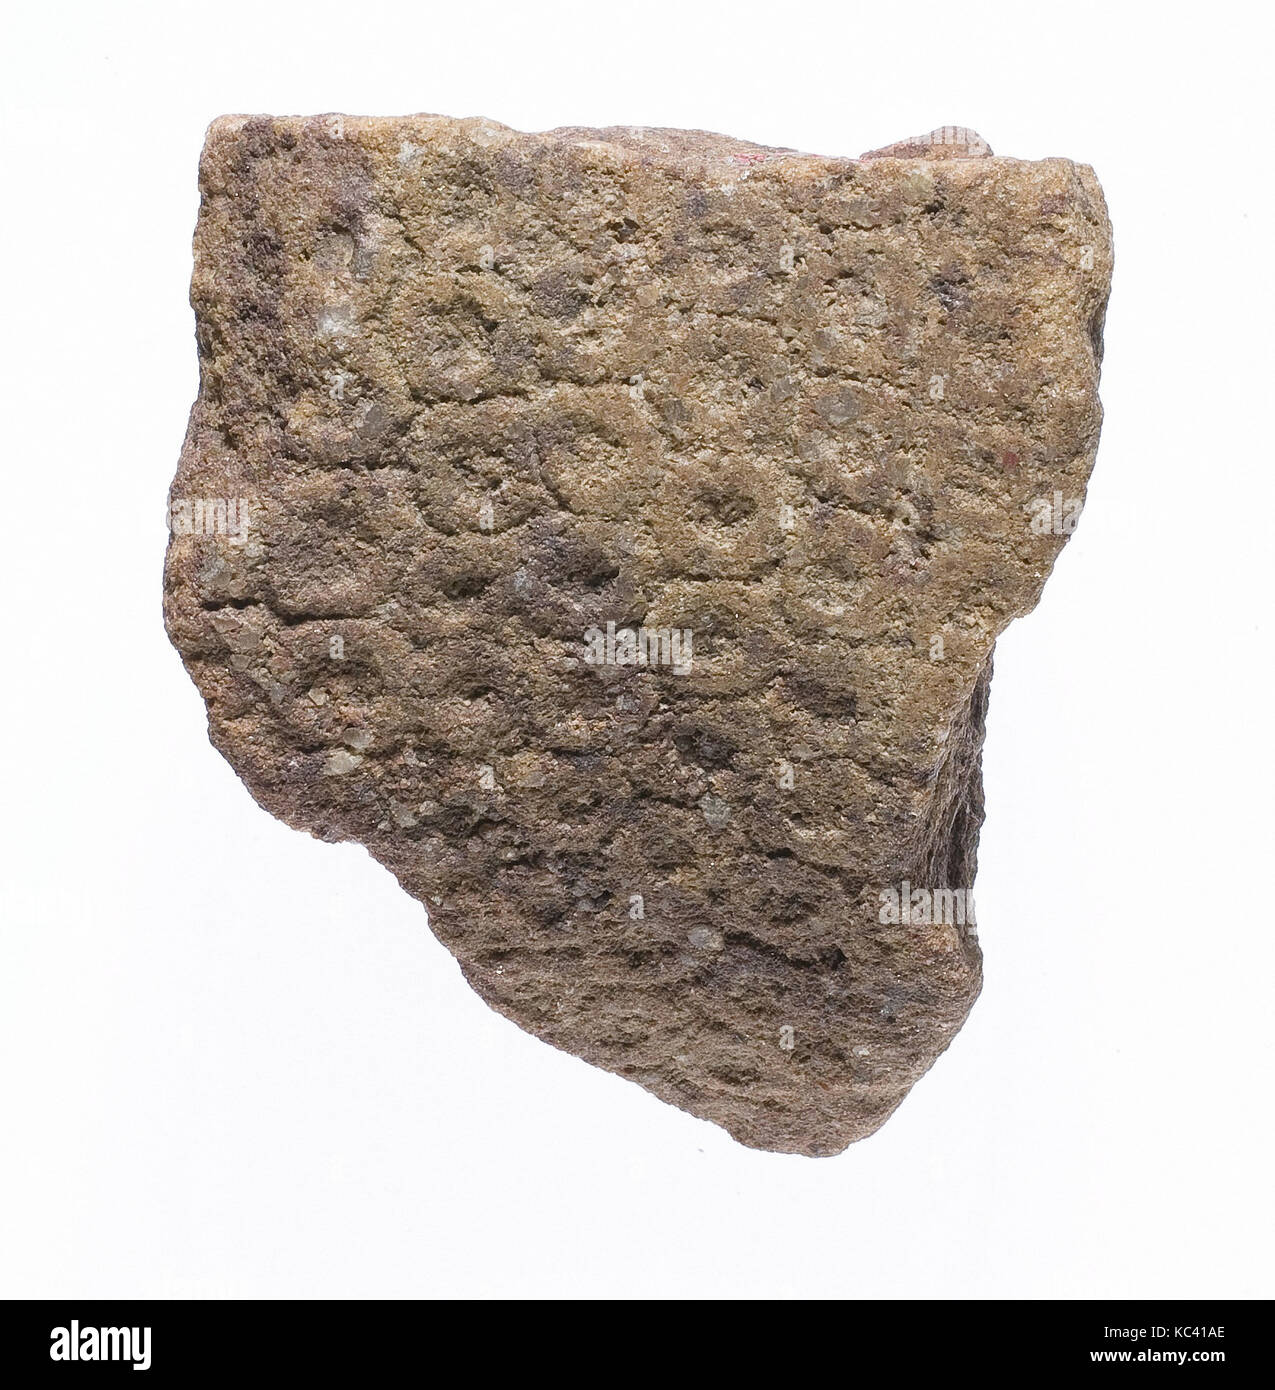 Corona con discos, dos superficies adyacentes, ca. 1353-1336 A.C. Foto de stock